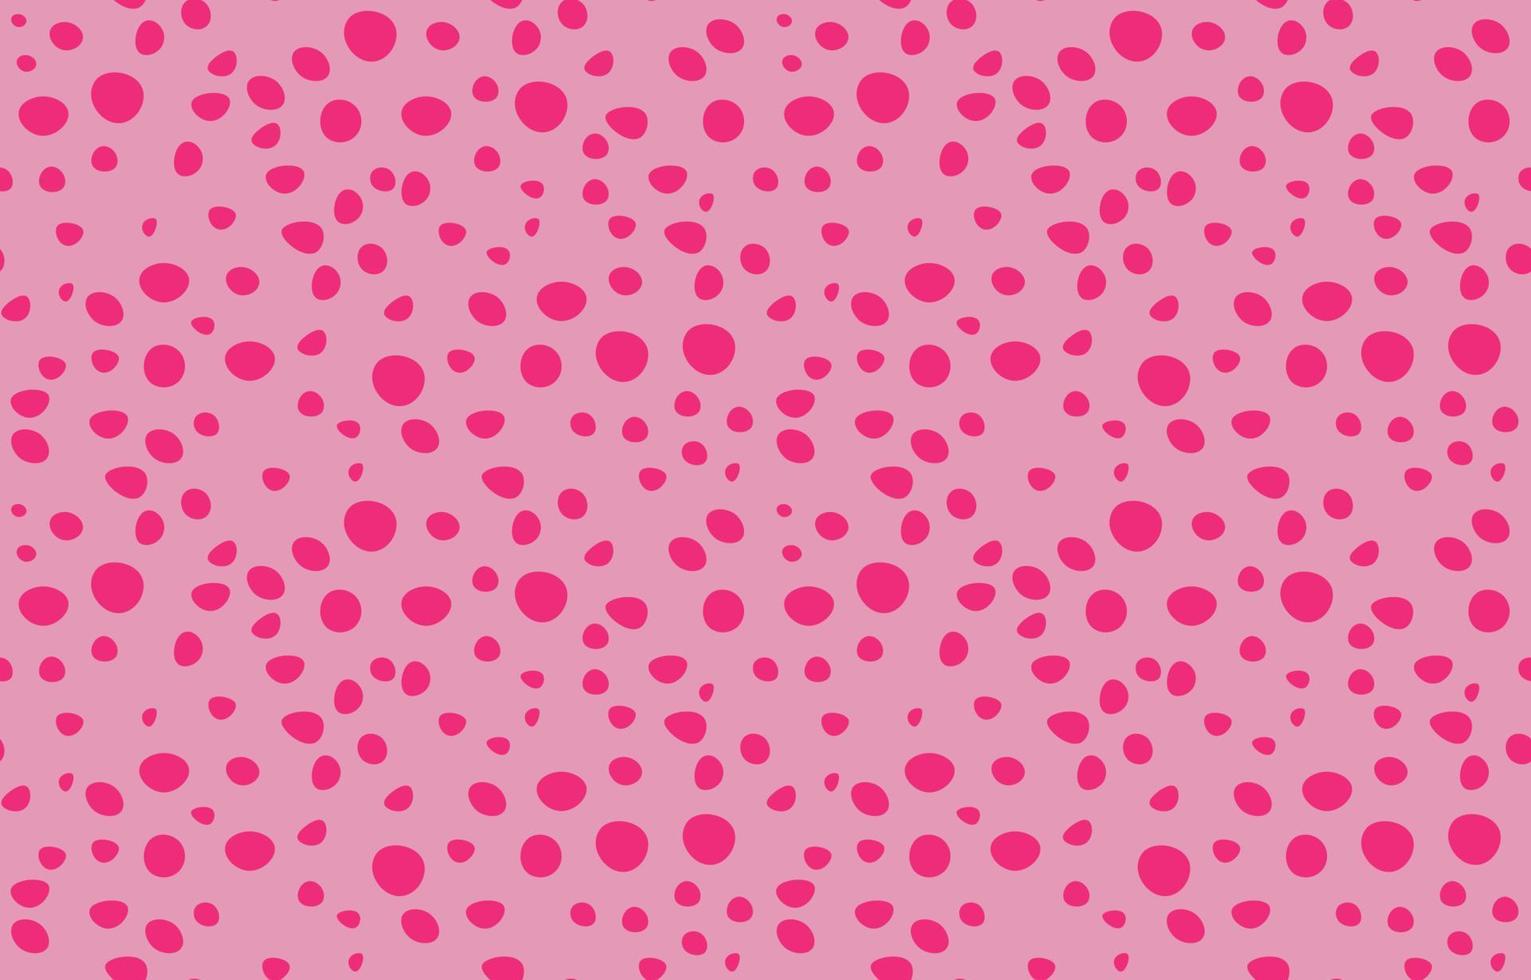 Hình nền với họa tiết hạt màu hồng trên nền hồng sẽ làm bạn liên tưởng đến sự nữ tính và tình yêu lãng mạn. Bộ sưu tập này sẽ mang đến cho bạn một không gian làm việc thoải mái và đầy sáng tạo với gam màu tươi sáng, phù hợp cho những ai yêu thích cảm giác ngọt ngào và ấm áp.